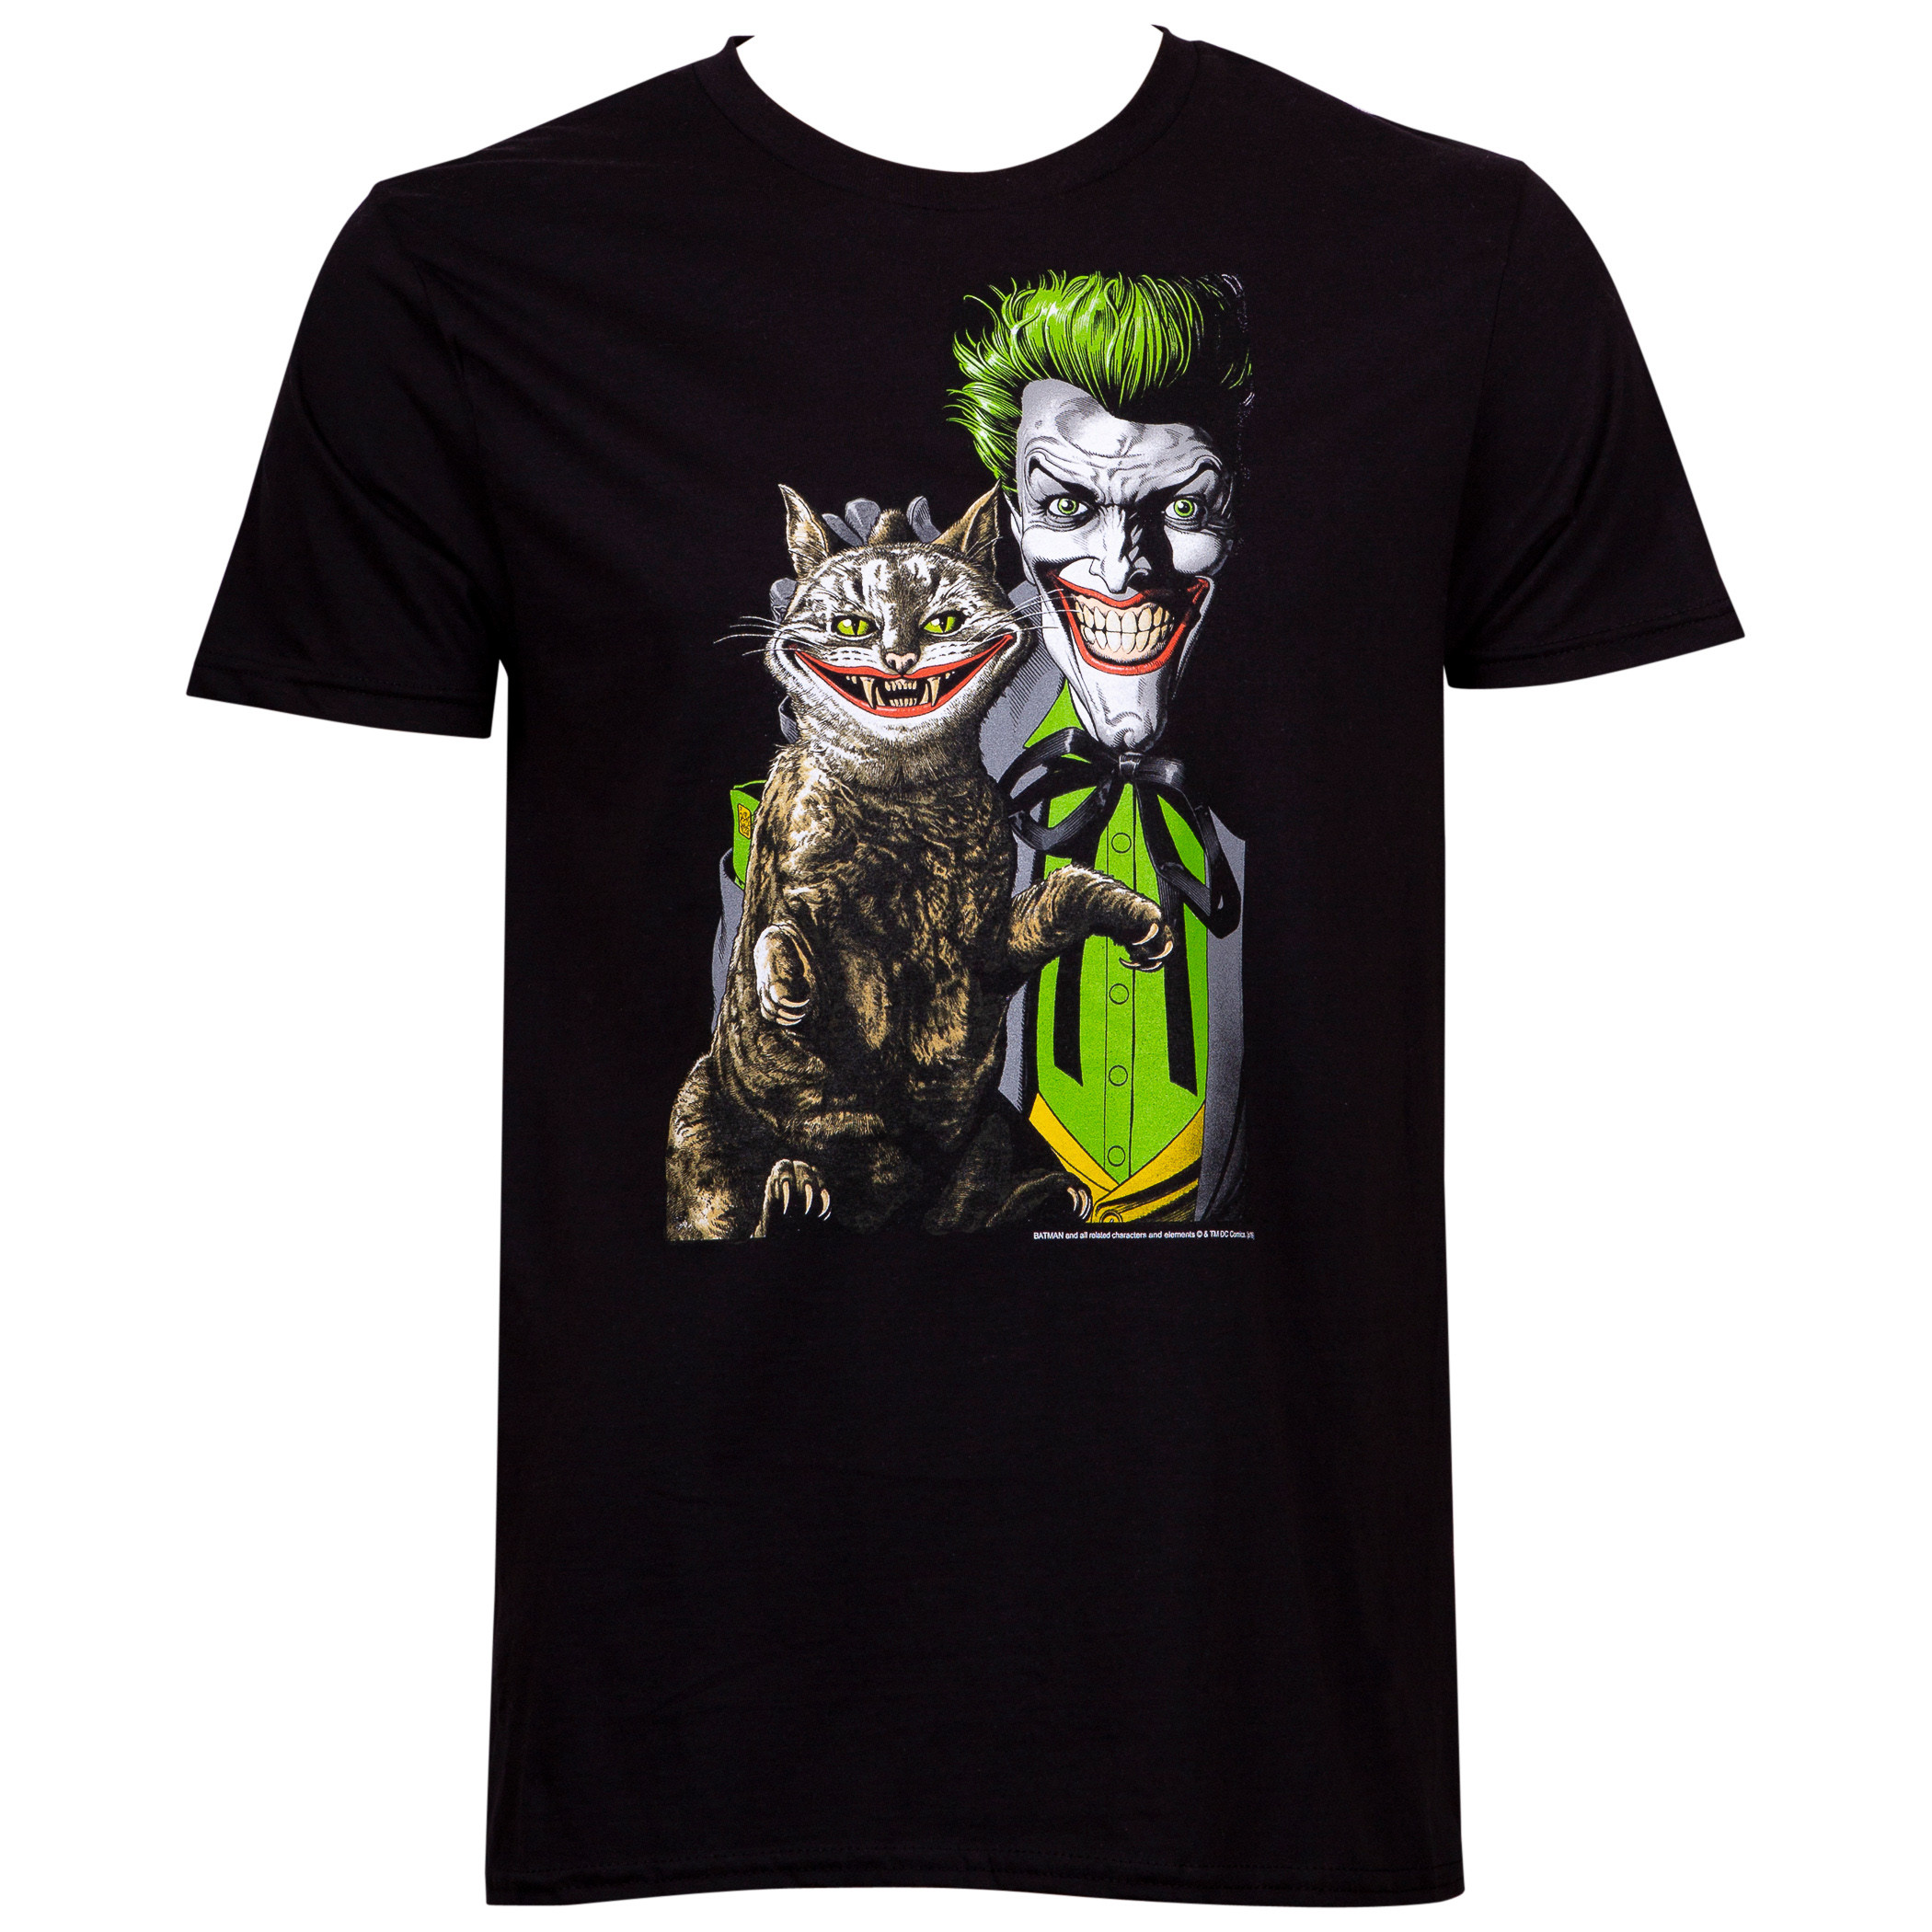 Joker Puuurfect  Crime art by Brian Bolland T Shirt